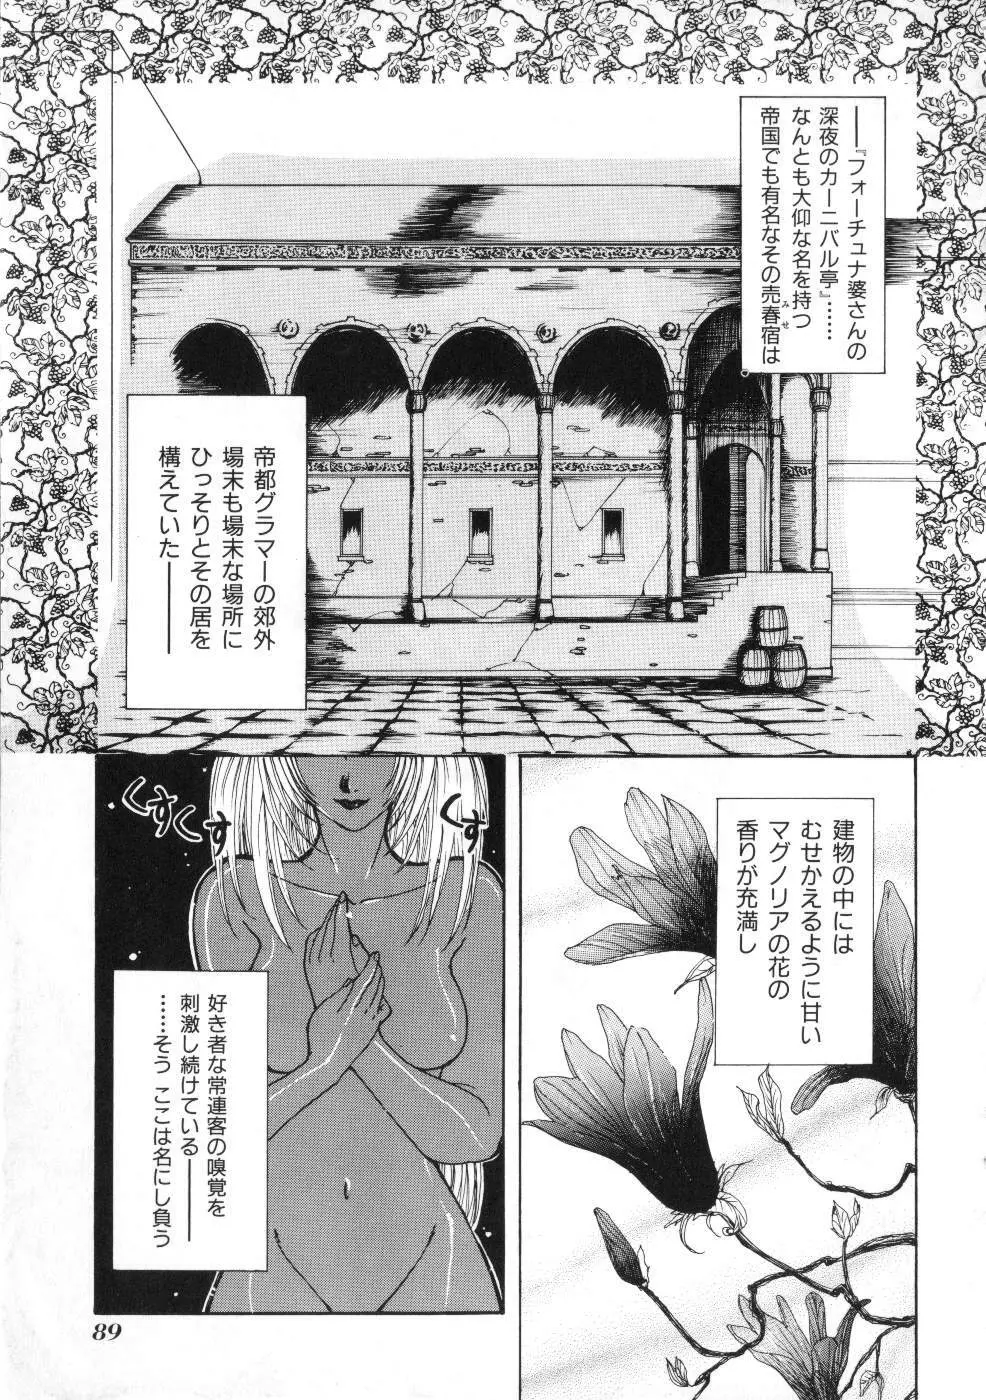 Miss ちゃいどる vol. 1 89ページ